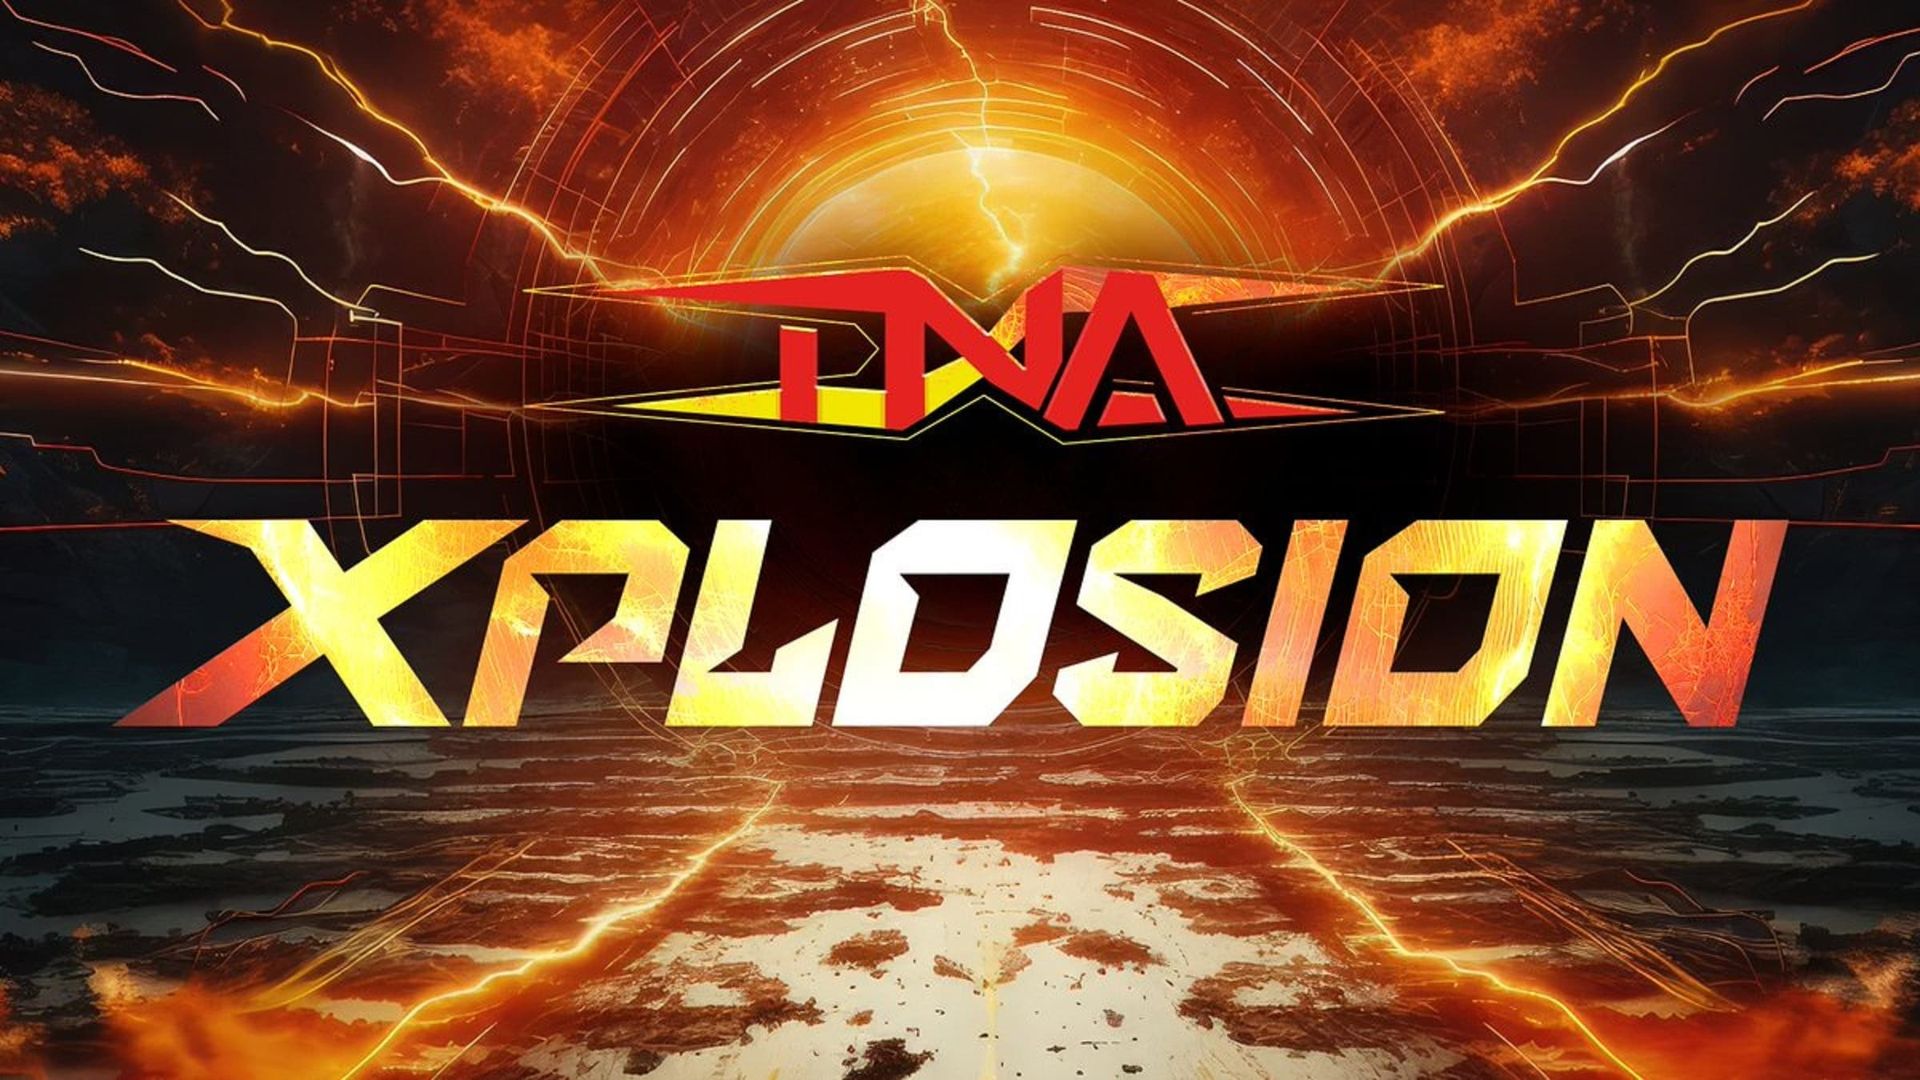 TNA Xplosion background